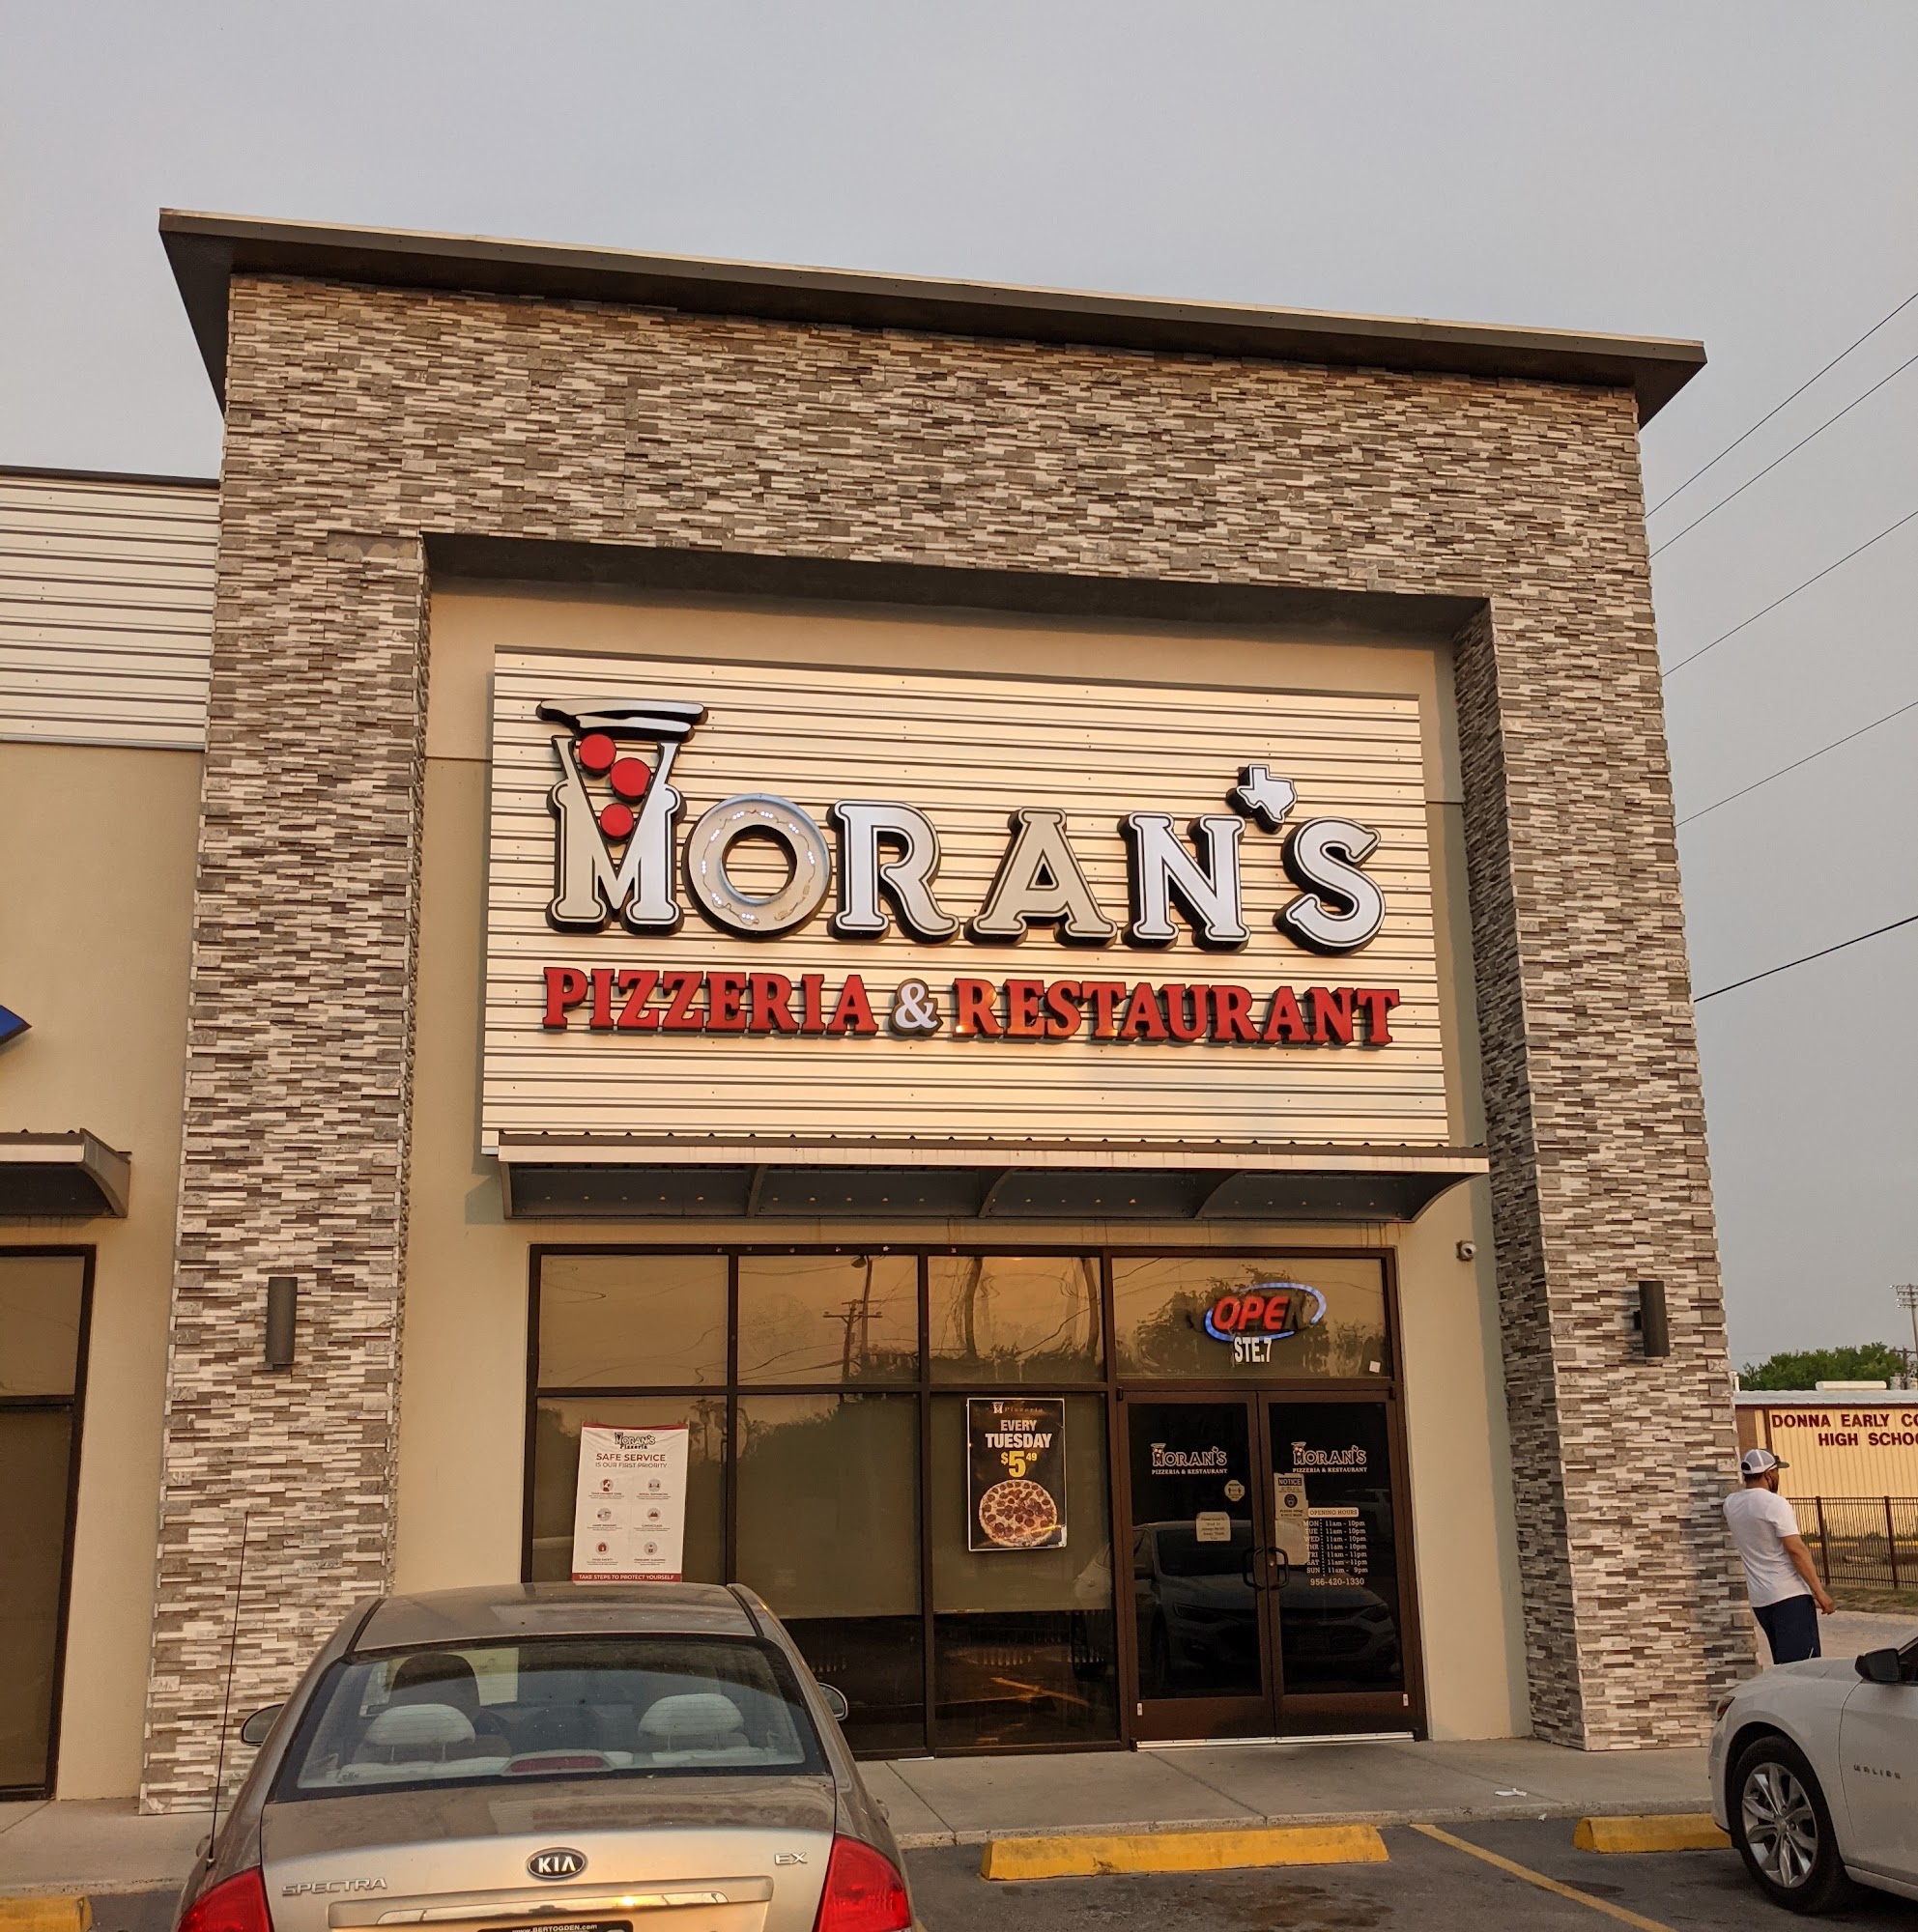 Moran’s Pizzeria & Restaurant